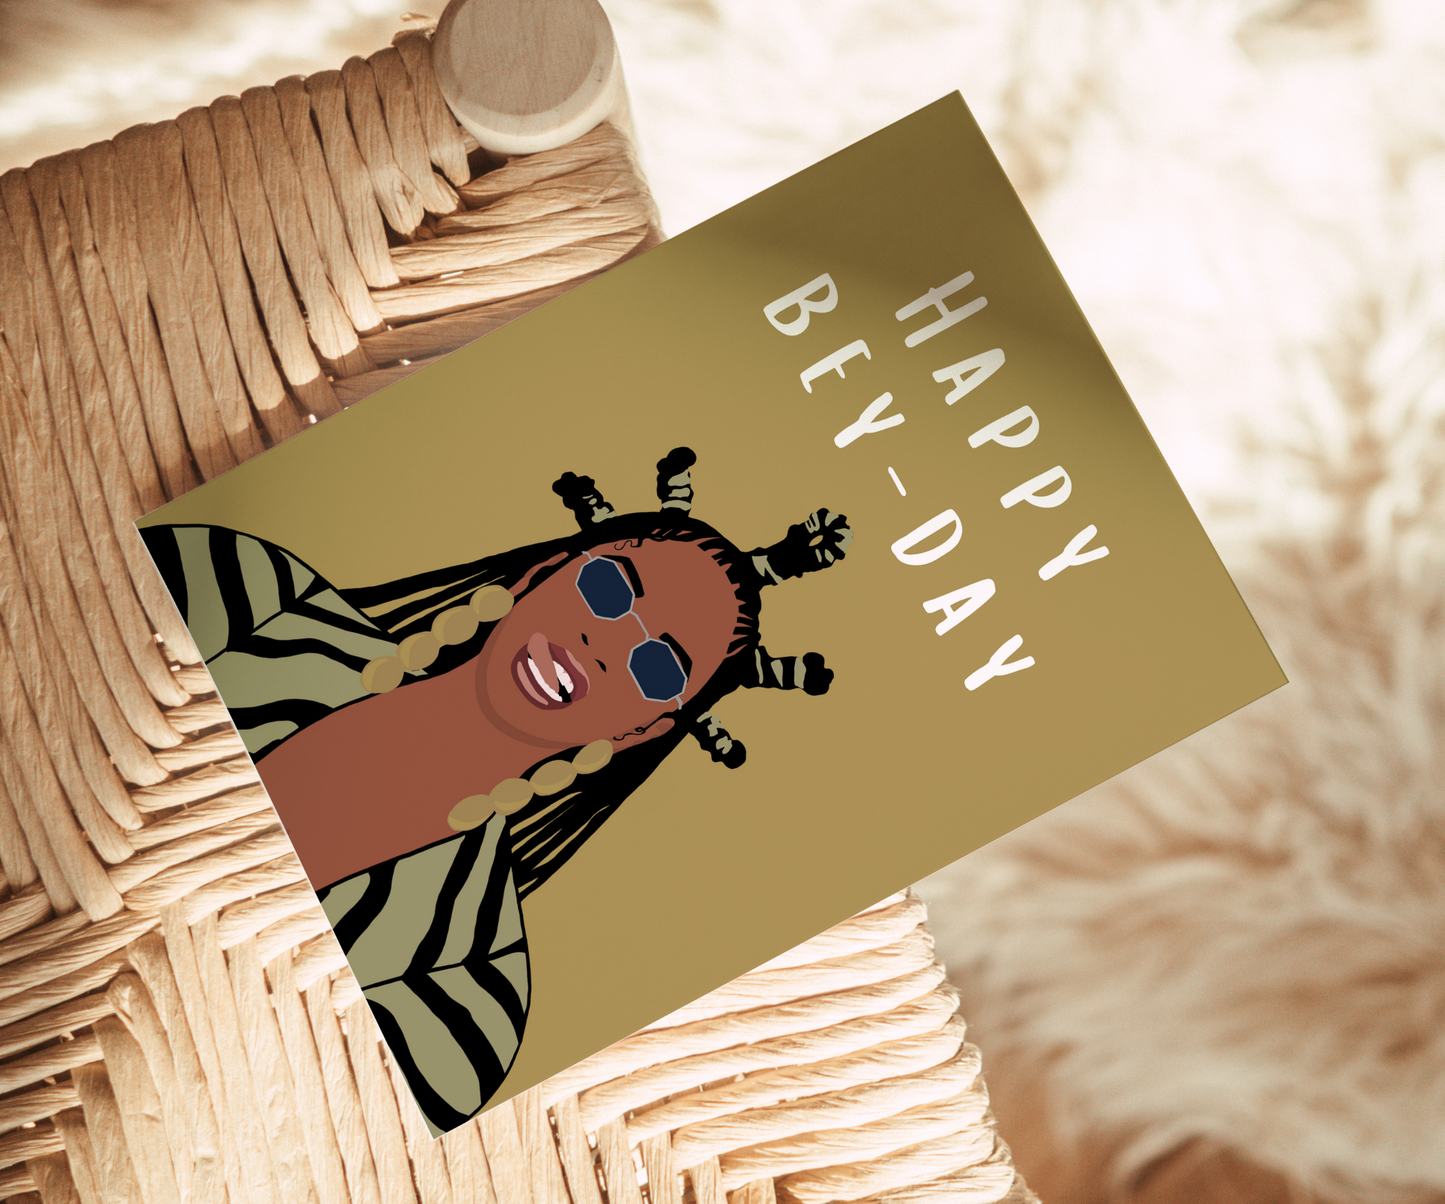 Beyoncé Geburtstagskarte - Happy Bey-Day